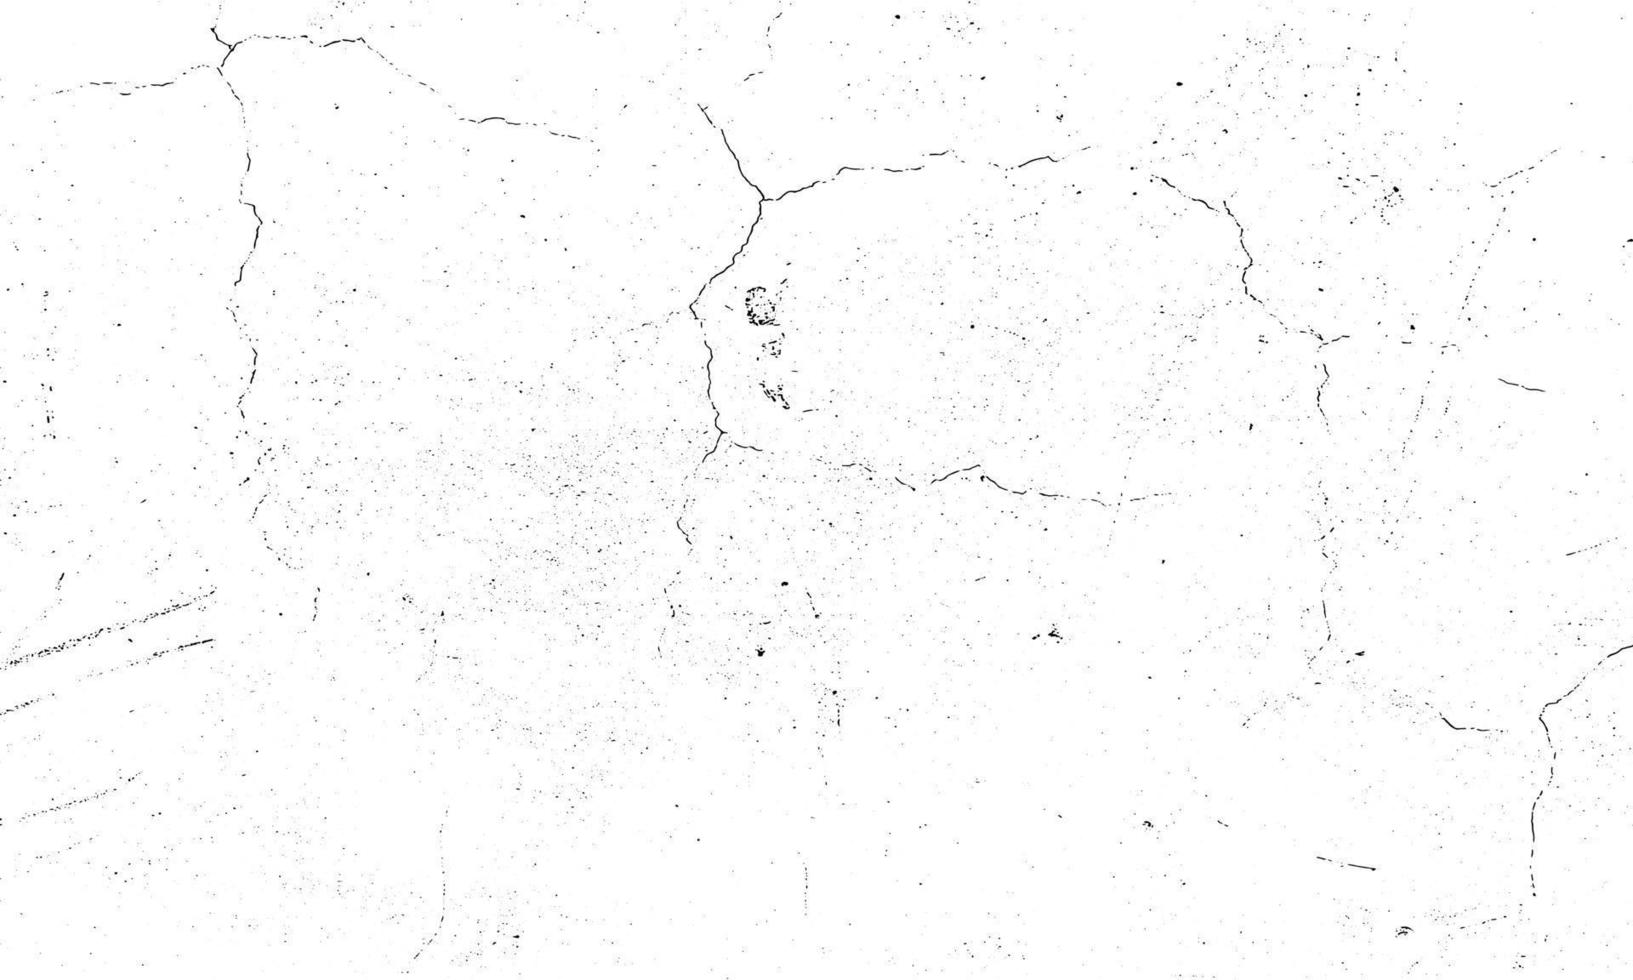 el sello granulado sucio y los arañazos superponen el fondo blanco. partícula de polvo envejecida grunge blanco y negro. ilustración vectorial vector